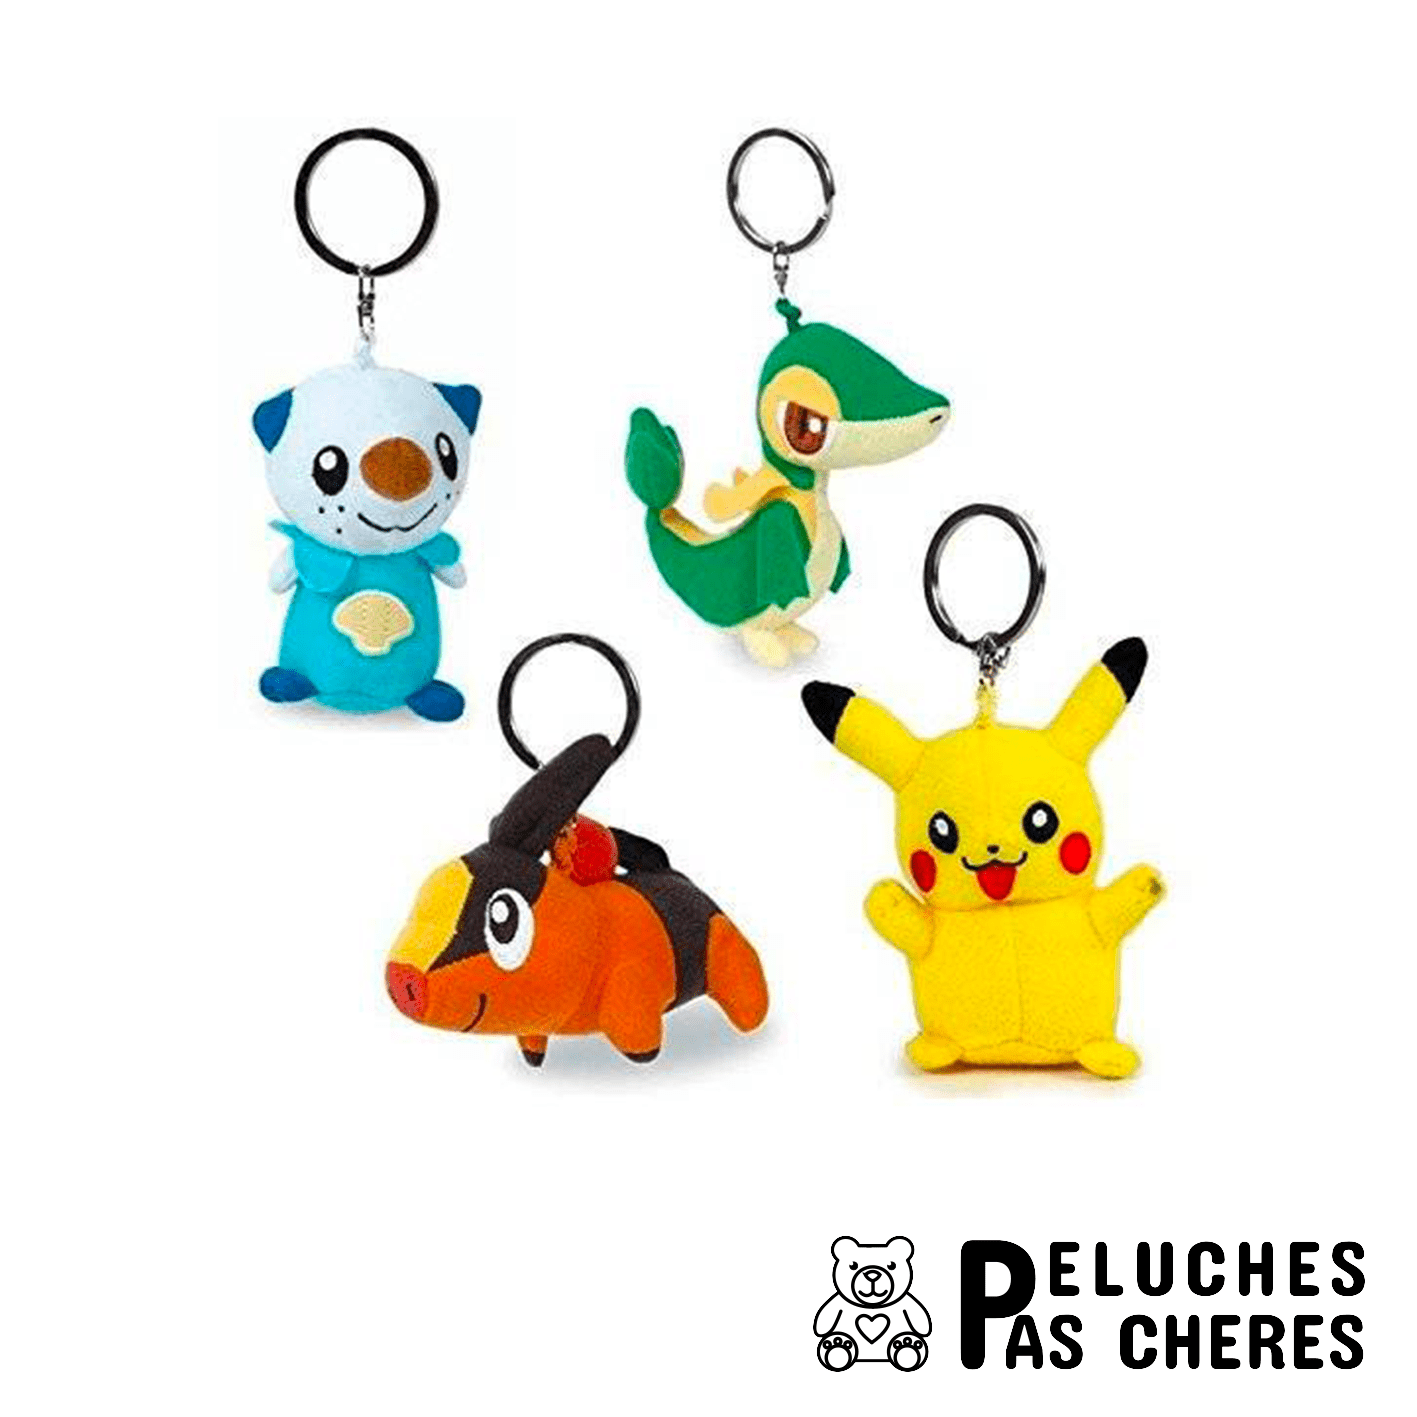 6€21 sur Porte-clés Pikachu Pokemon 10cm - Jaune - Porte clef